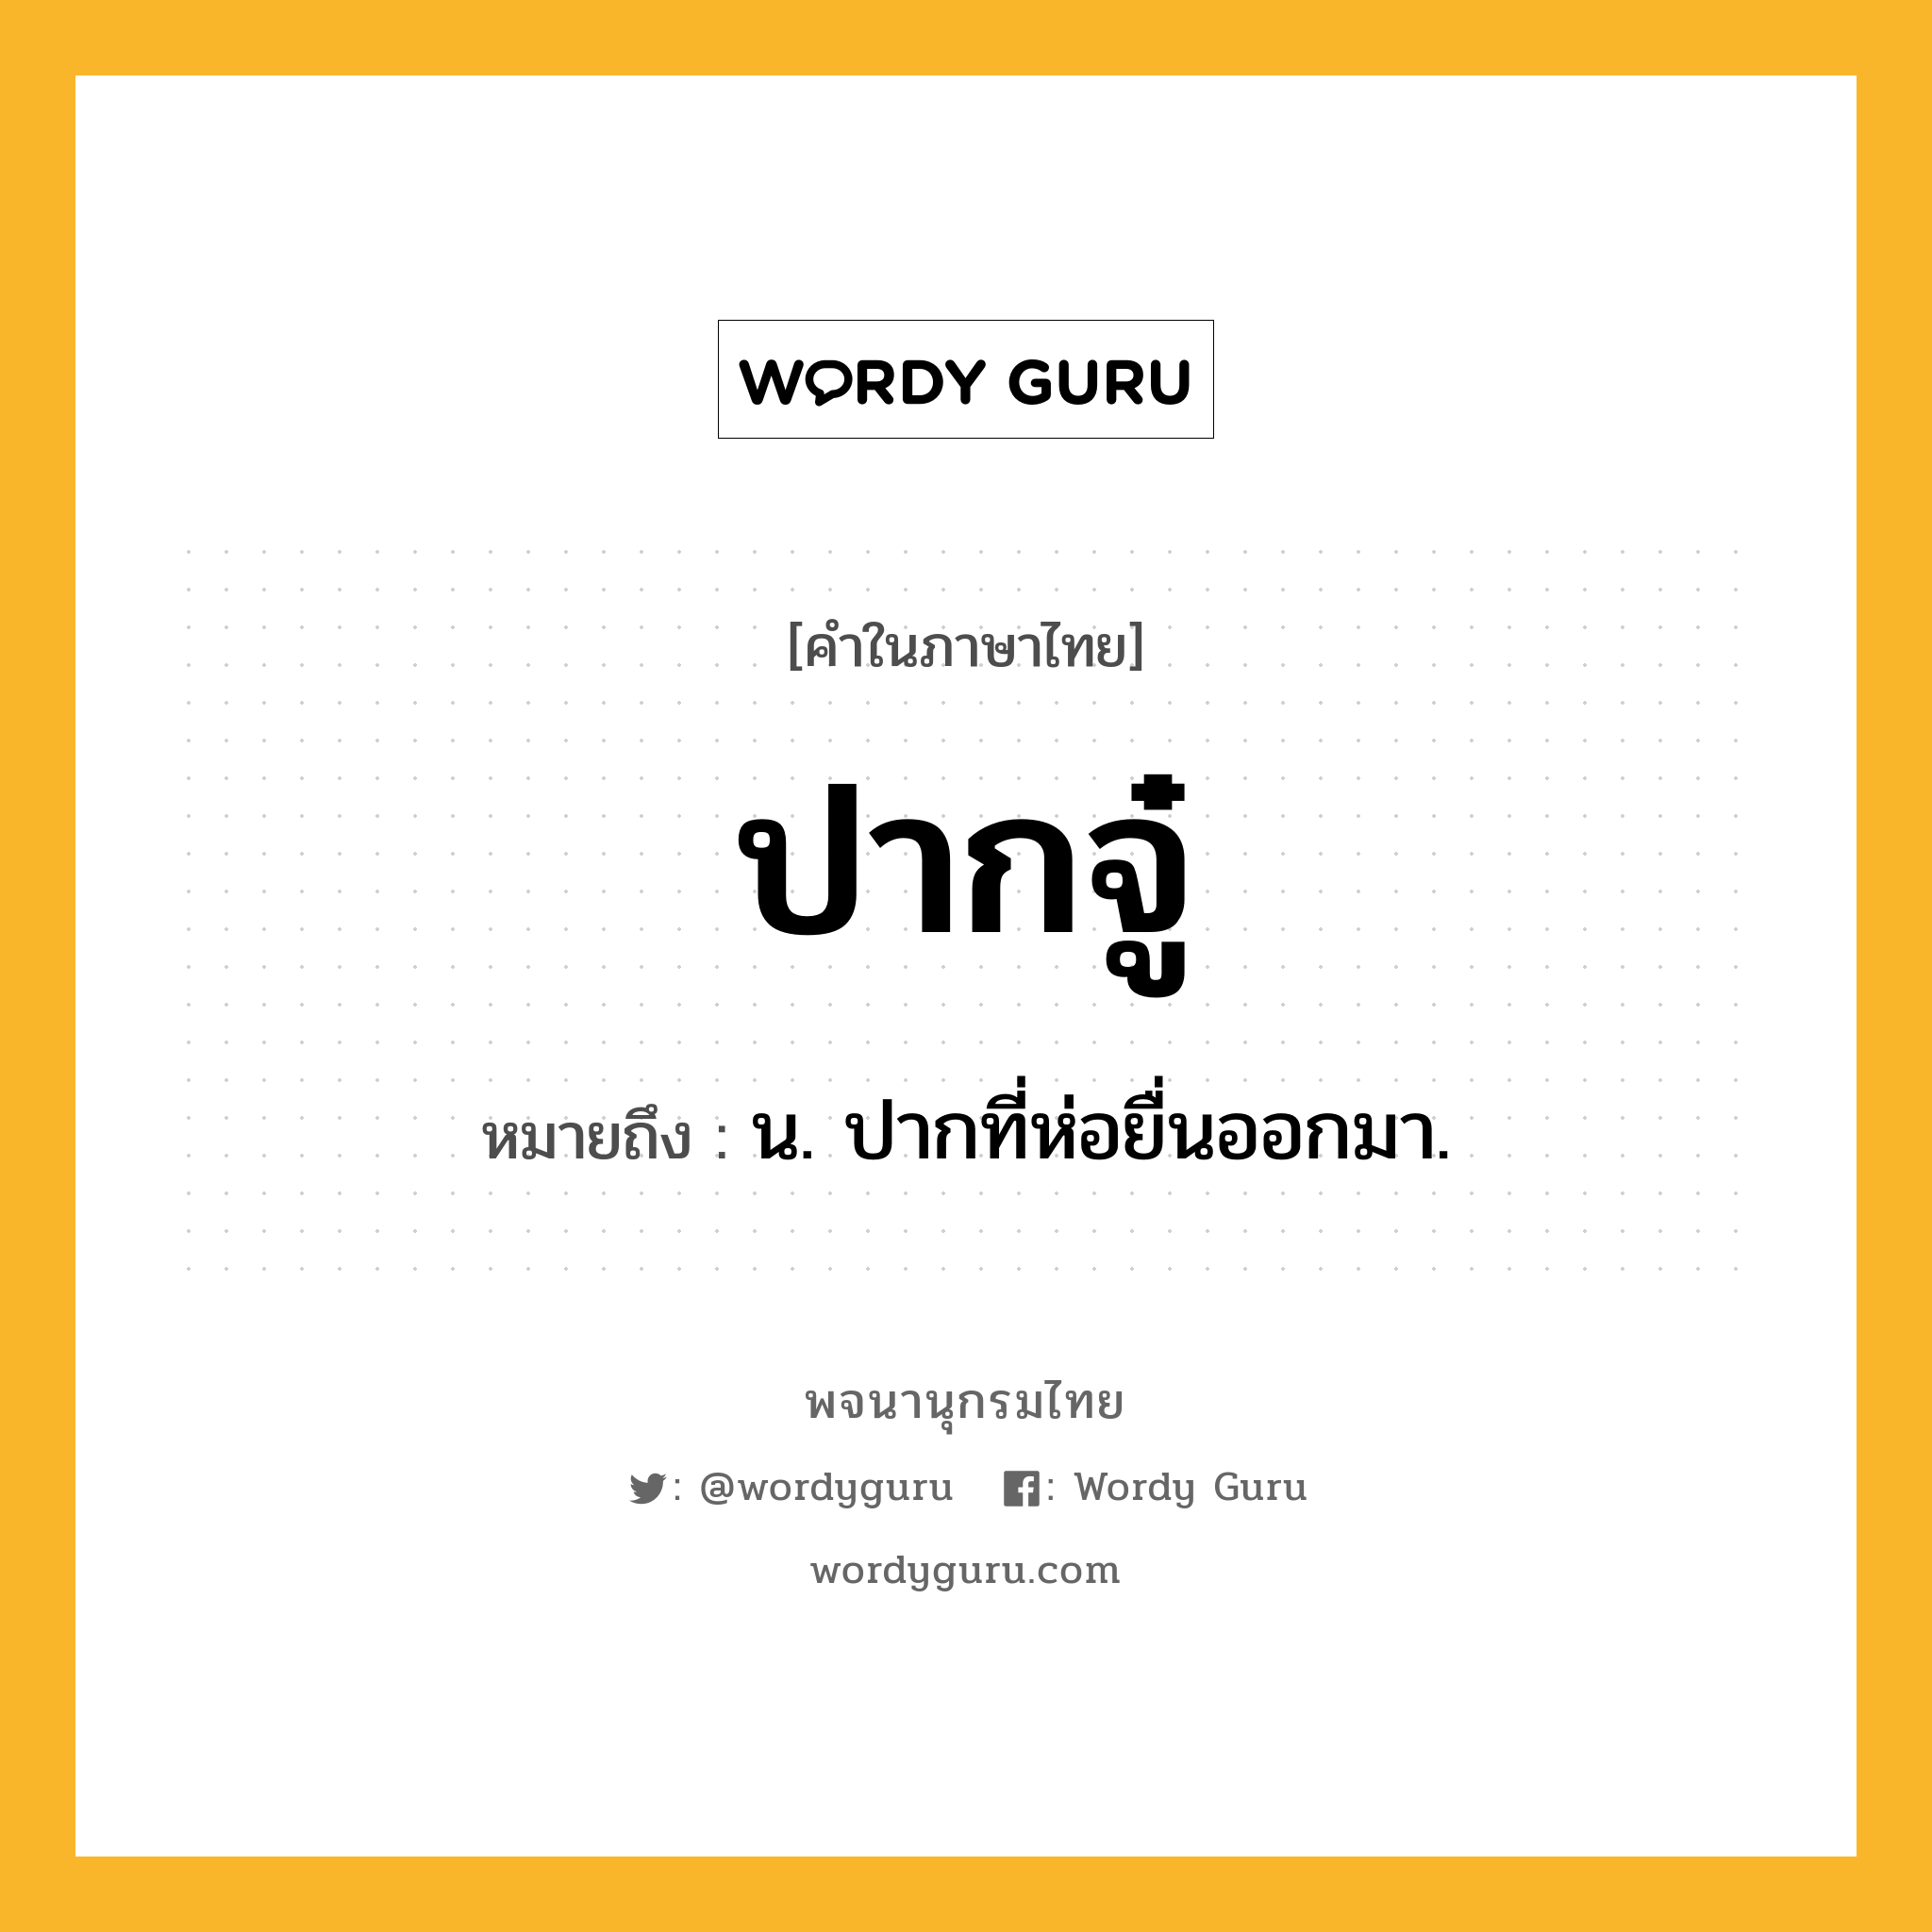 ปากจู๋ ความหมาย หมายถึงอะไร?, คำในภาษาไทย ปากจู๋ หมายถึง น. ปากที่ห่อยื่นออกมา.